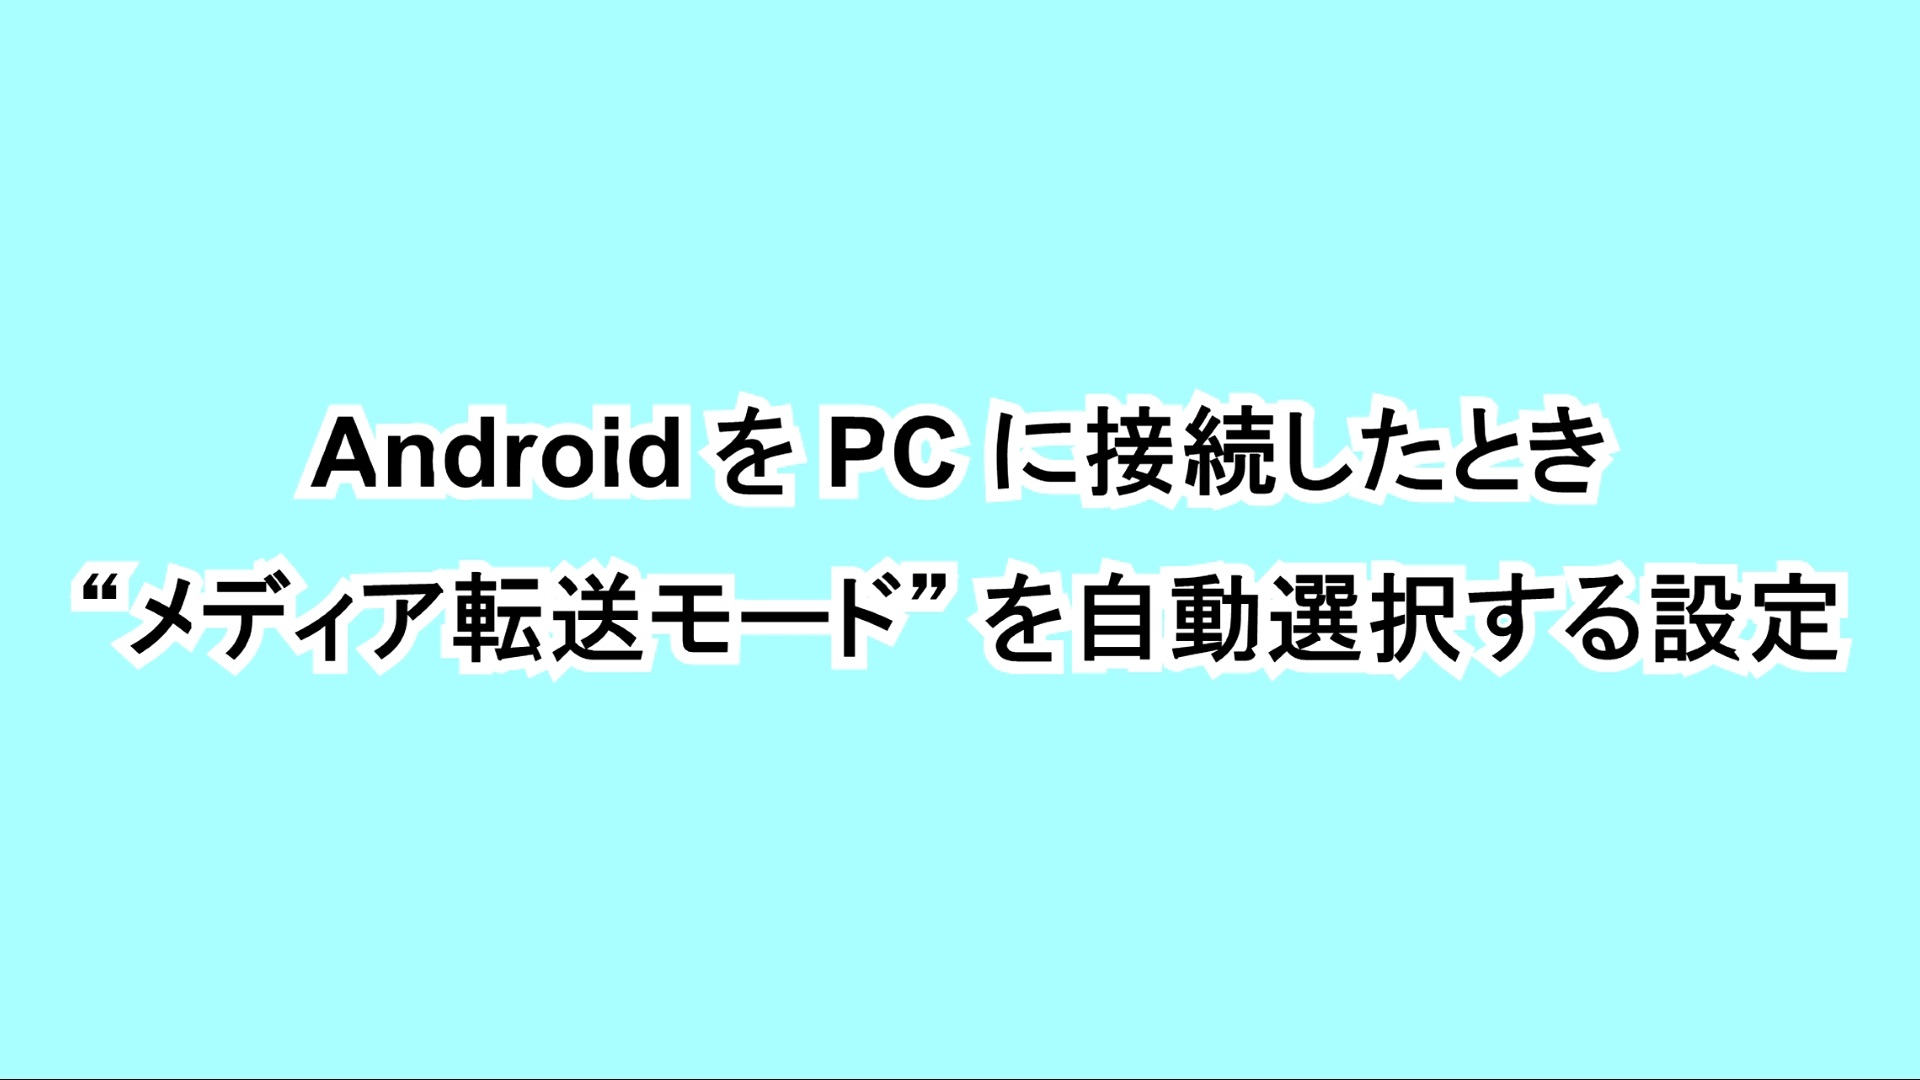 AndroidをPCに接続したときに“メディア転送モード”を自動選択する設定